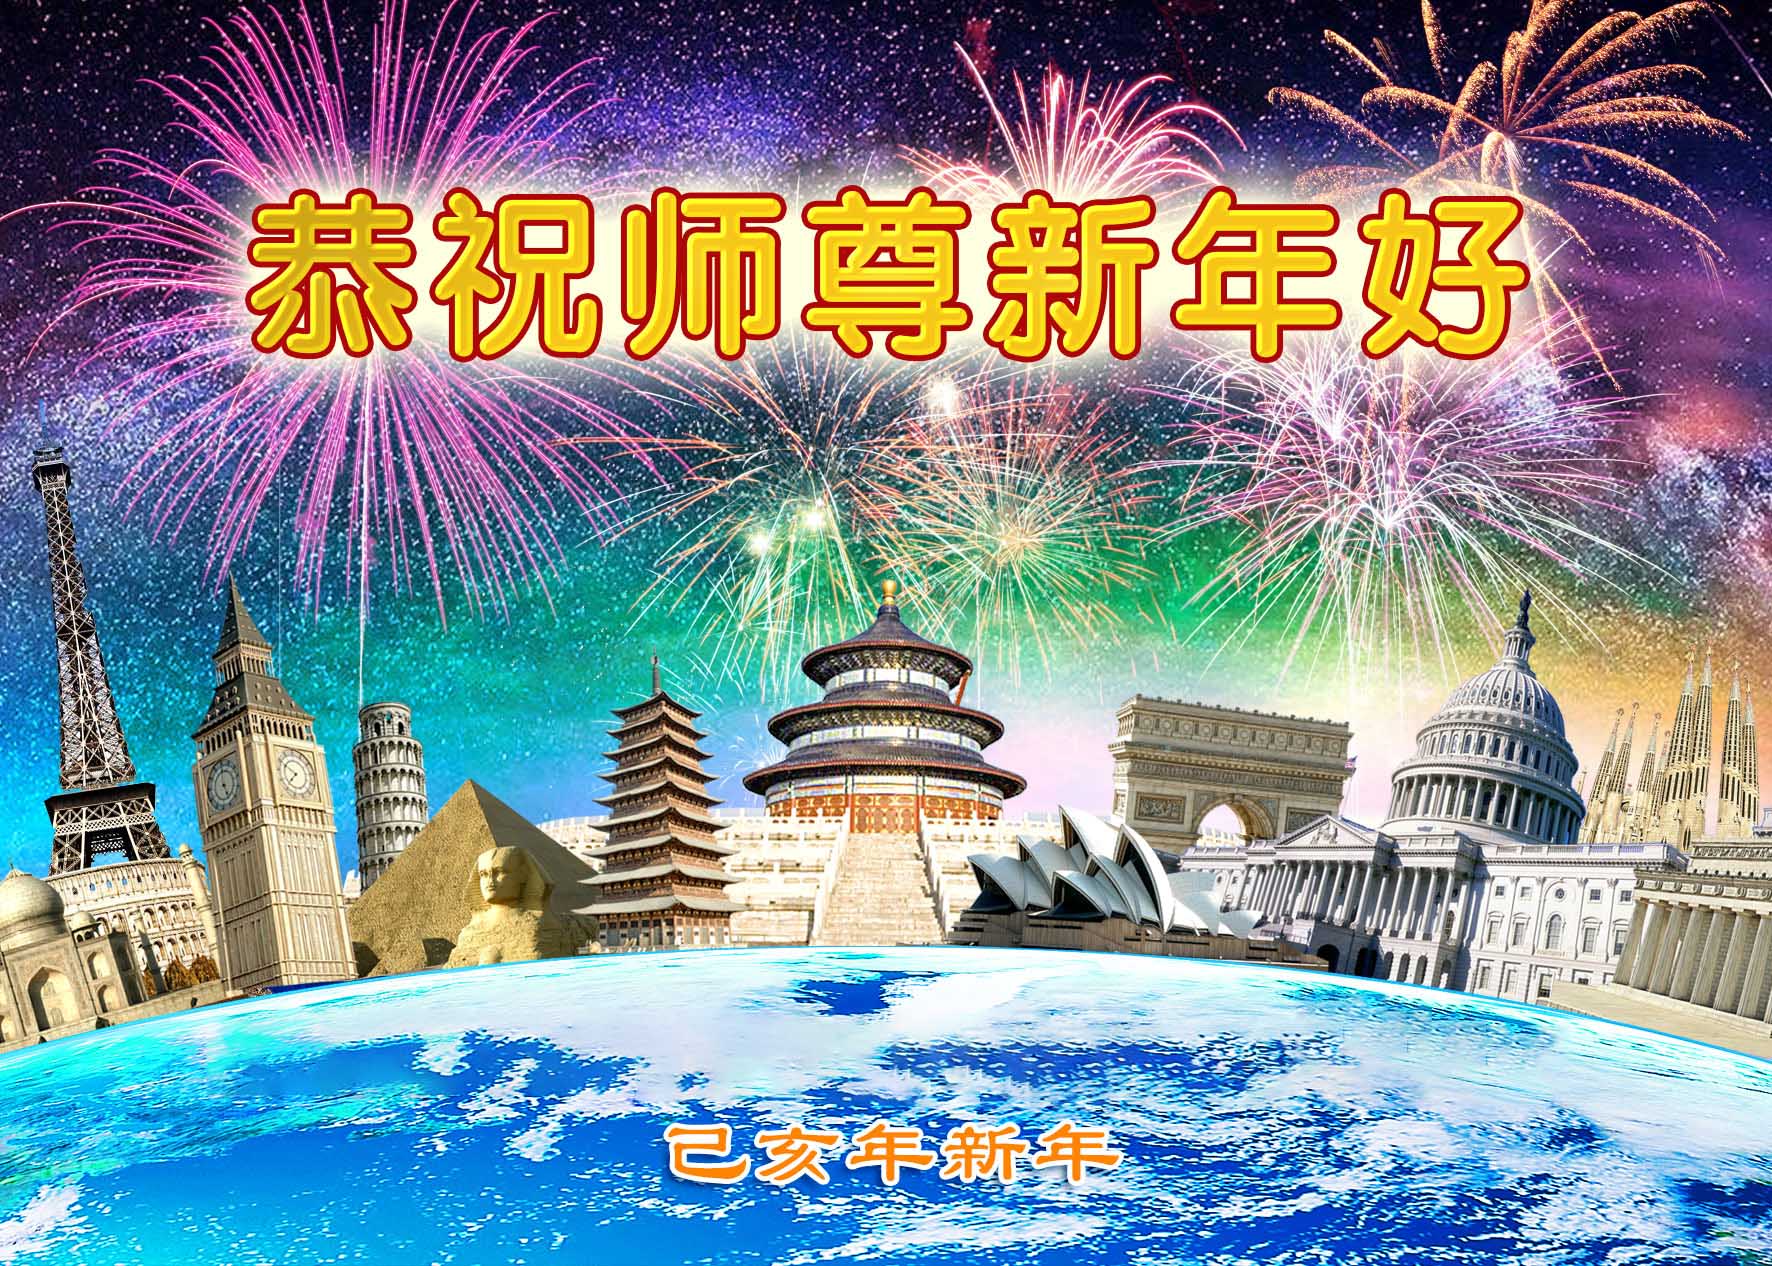 Image for article Практикующие и те, кто не практикует, в Китае и за рубежом желают Учителю Ли Хунчжи счастливого Нового года